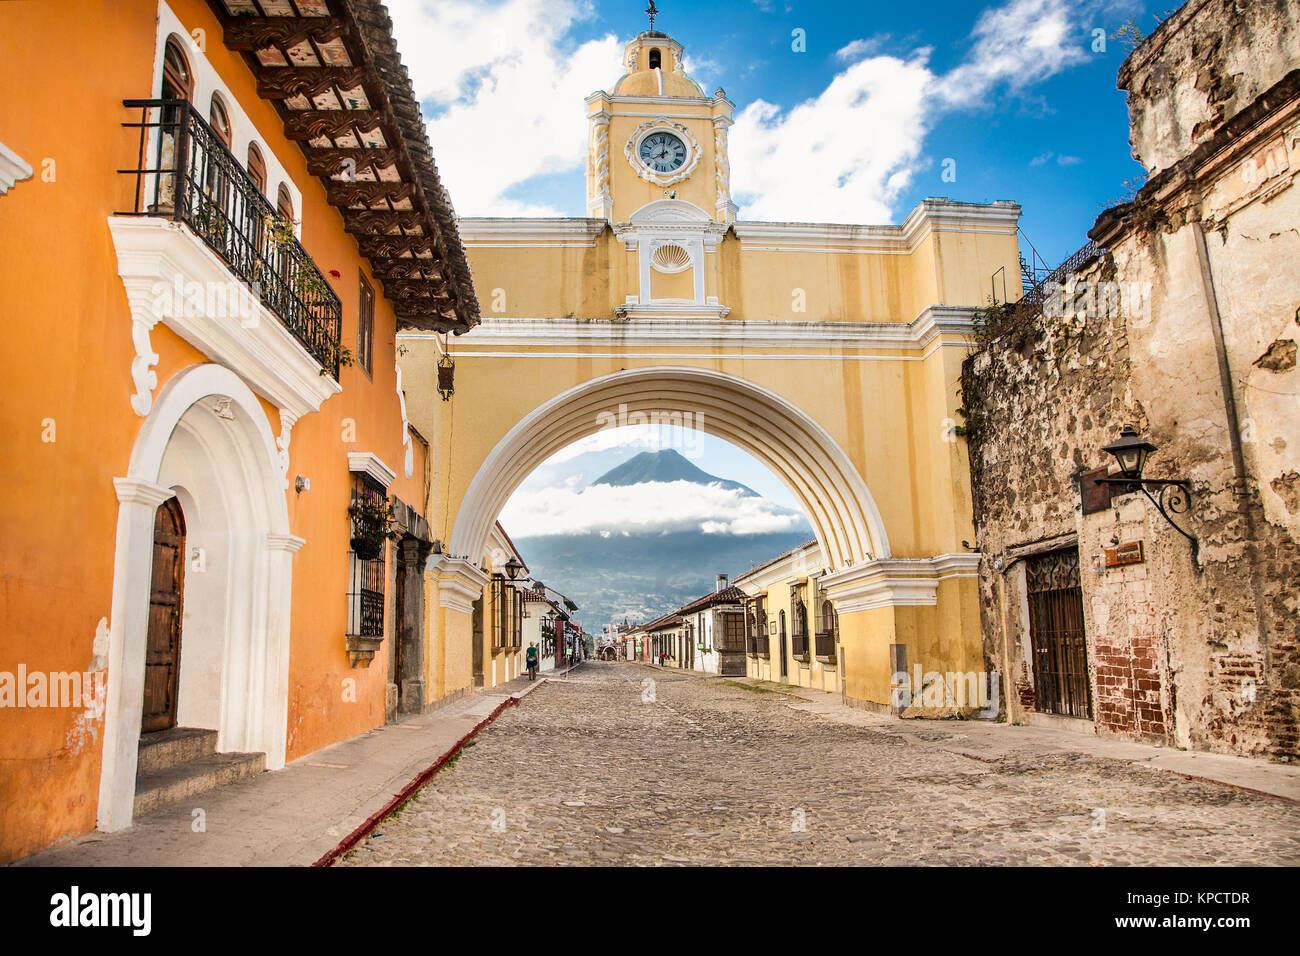 Arco de Santa Catalina und kolonialen Häuser in Tha street view von Antigua, Guatemala. Die historische Stadt Antigua ist UNESCO-Weltkulturerbe seit 19. Stockfoto